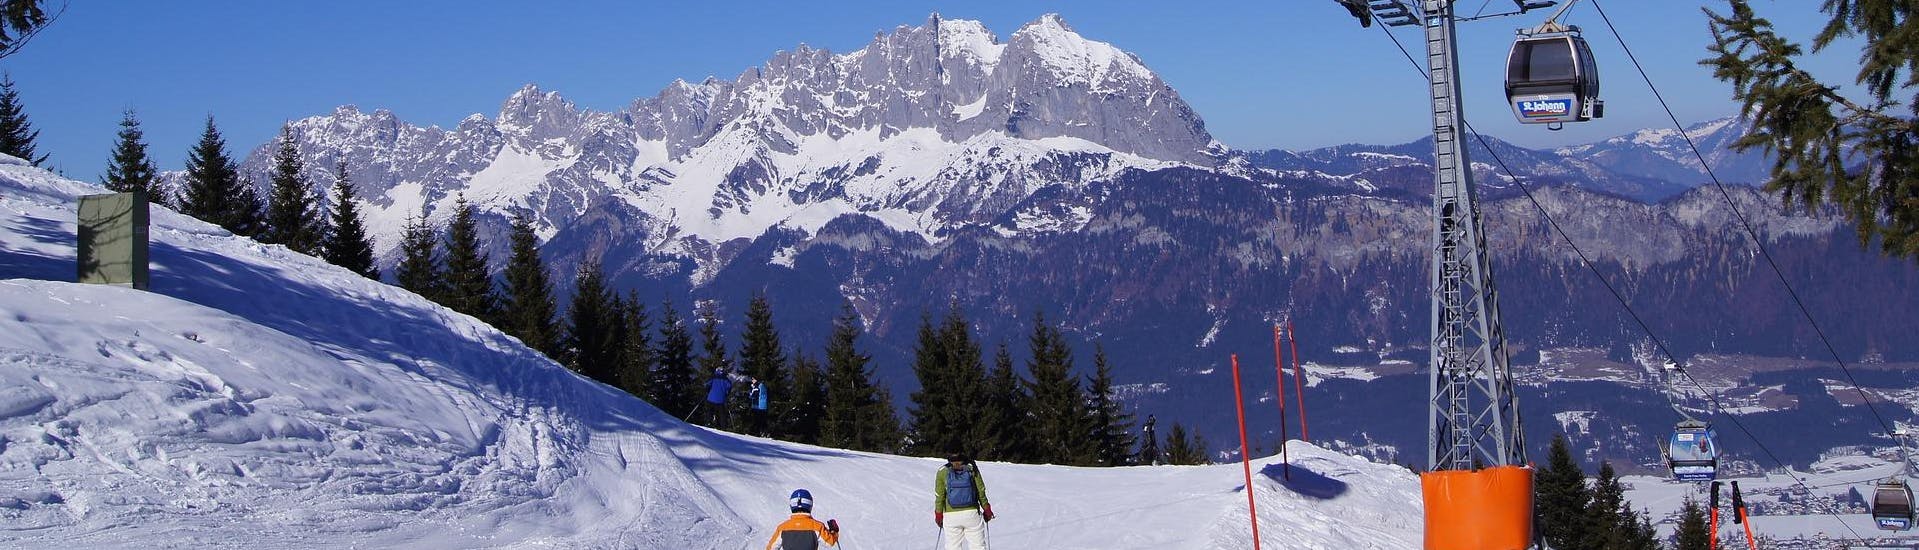 Adulti e bambini che sciano nella stazione sciistica di St Johann in Tirol.